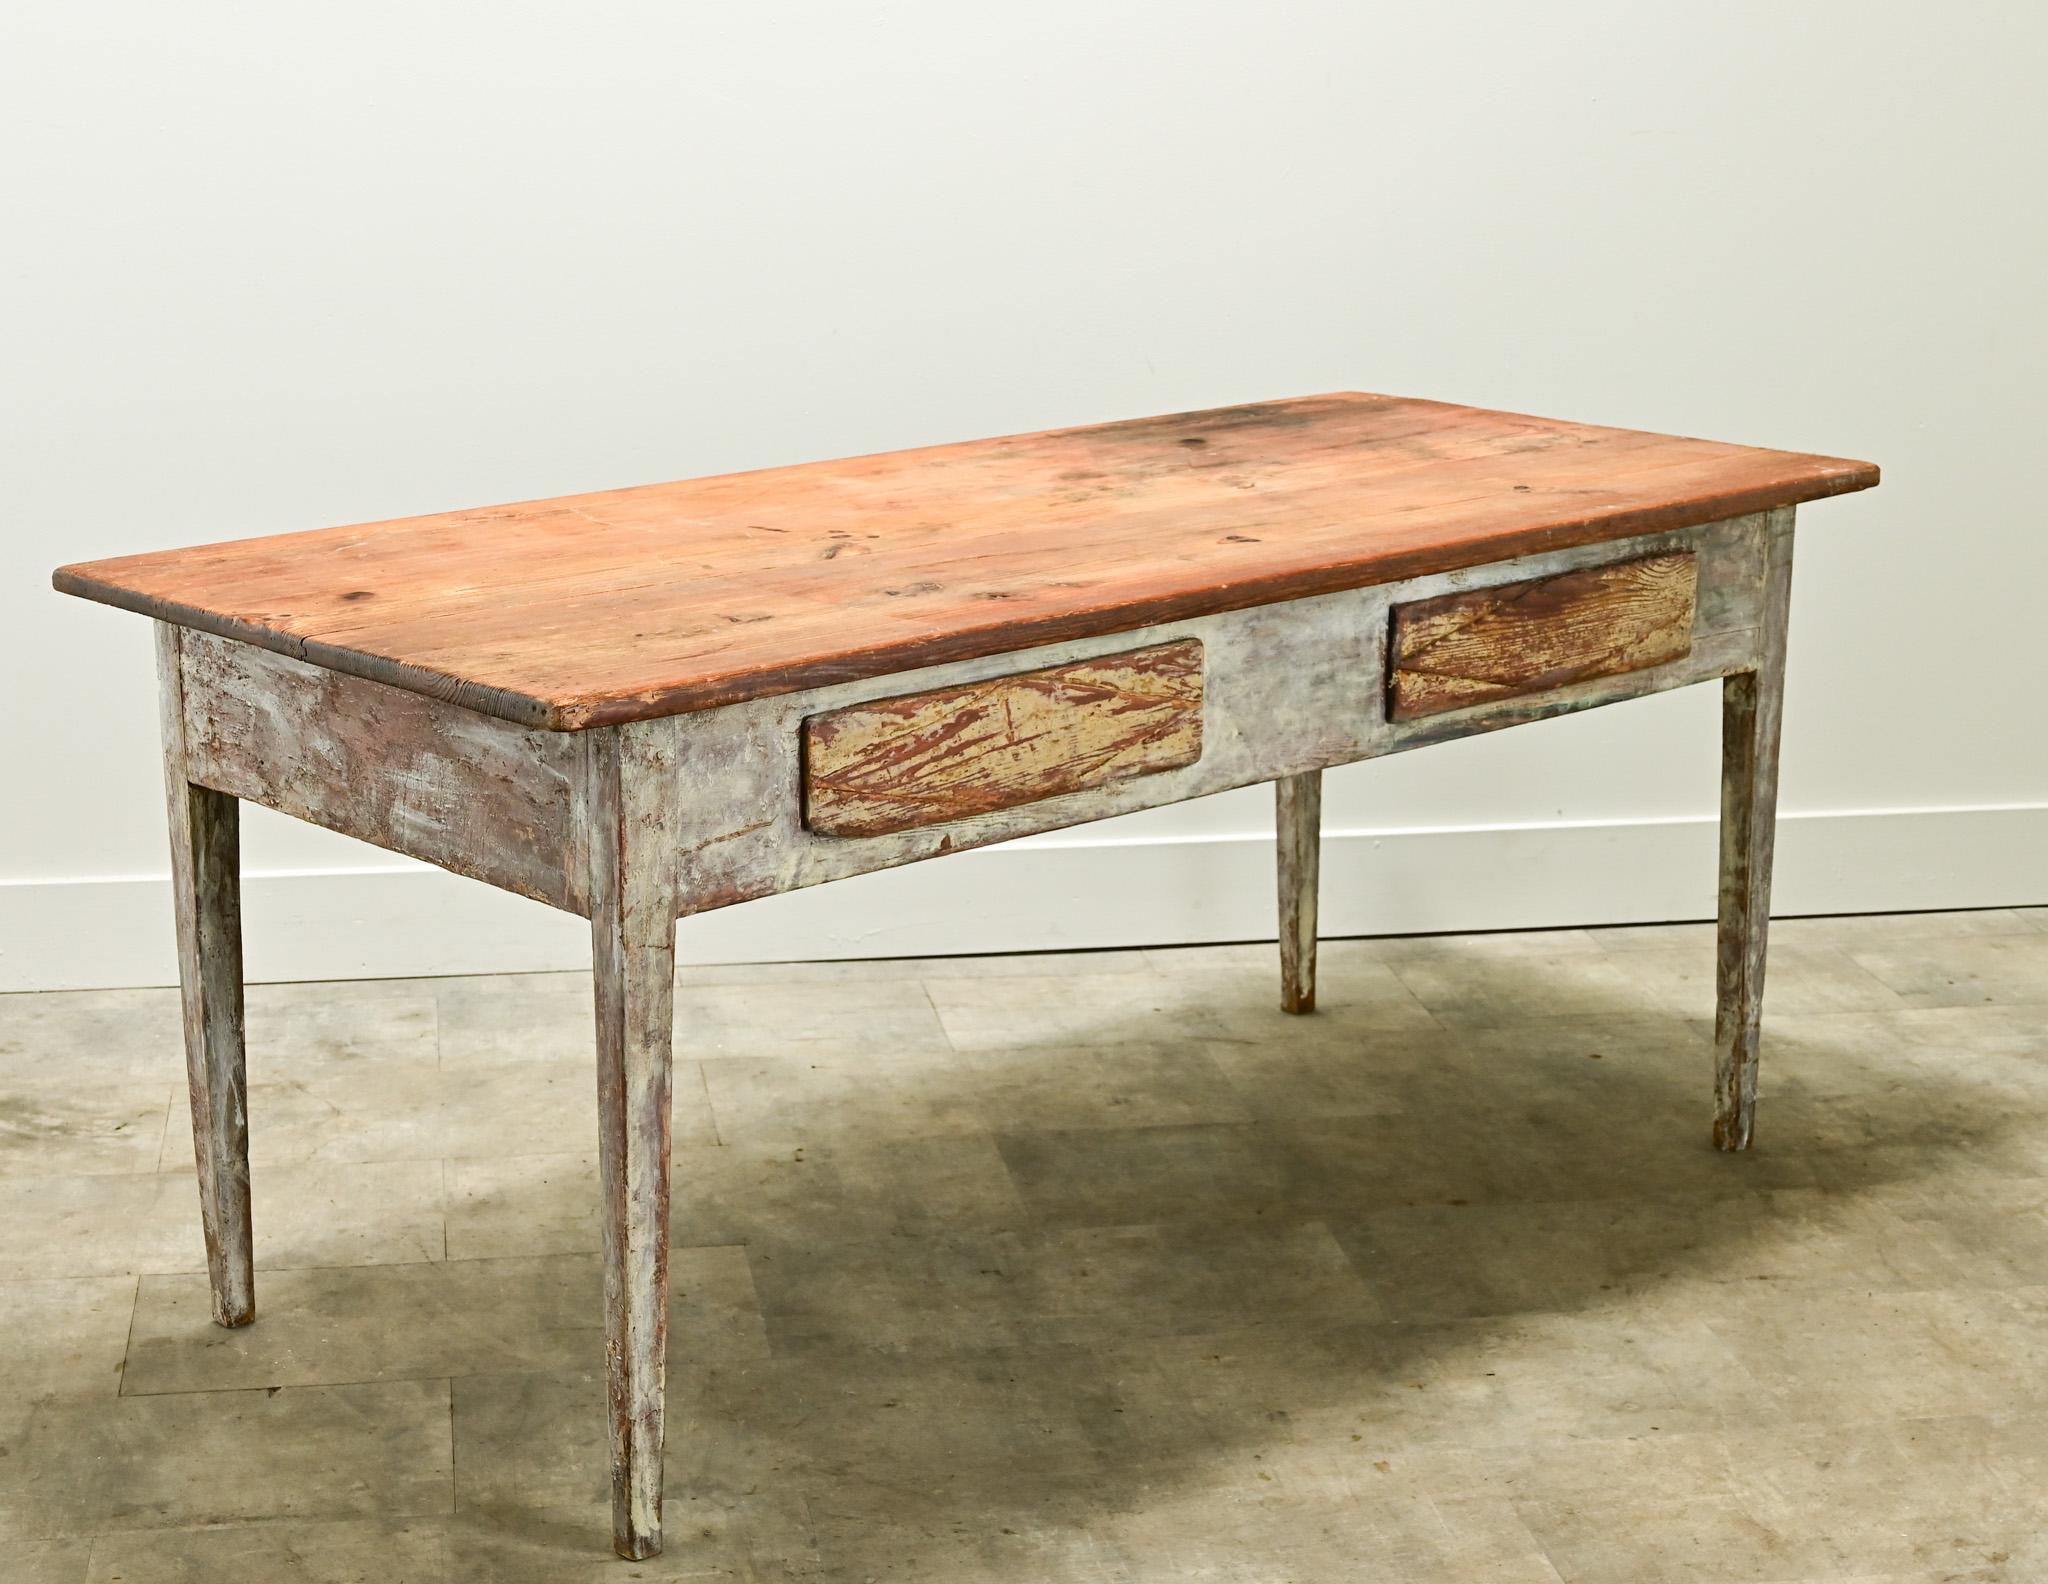 Table rustique en pin peint de style gustavien datant des années 1820, Suède. Le plateau de table en pin ciré est amovible et repose sur une base peinte et usée. La base est recouverte de nombreuses couches de peinture et a été récemment resserrée,